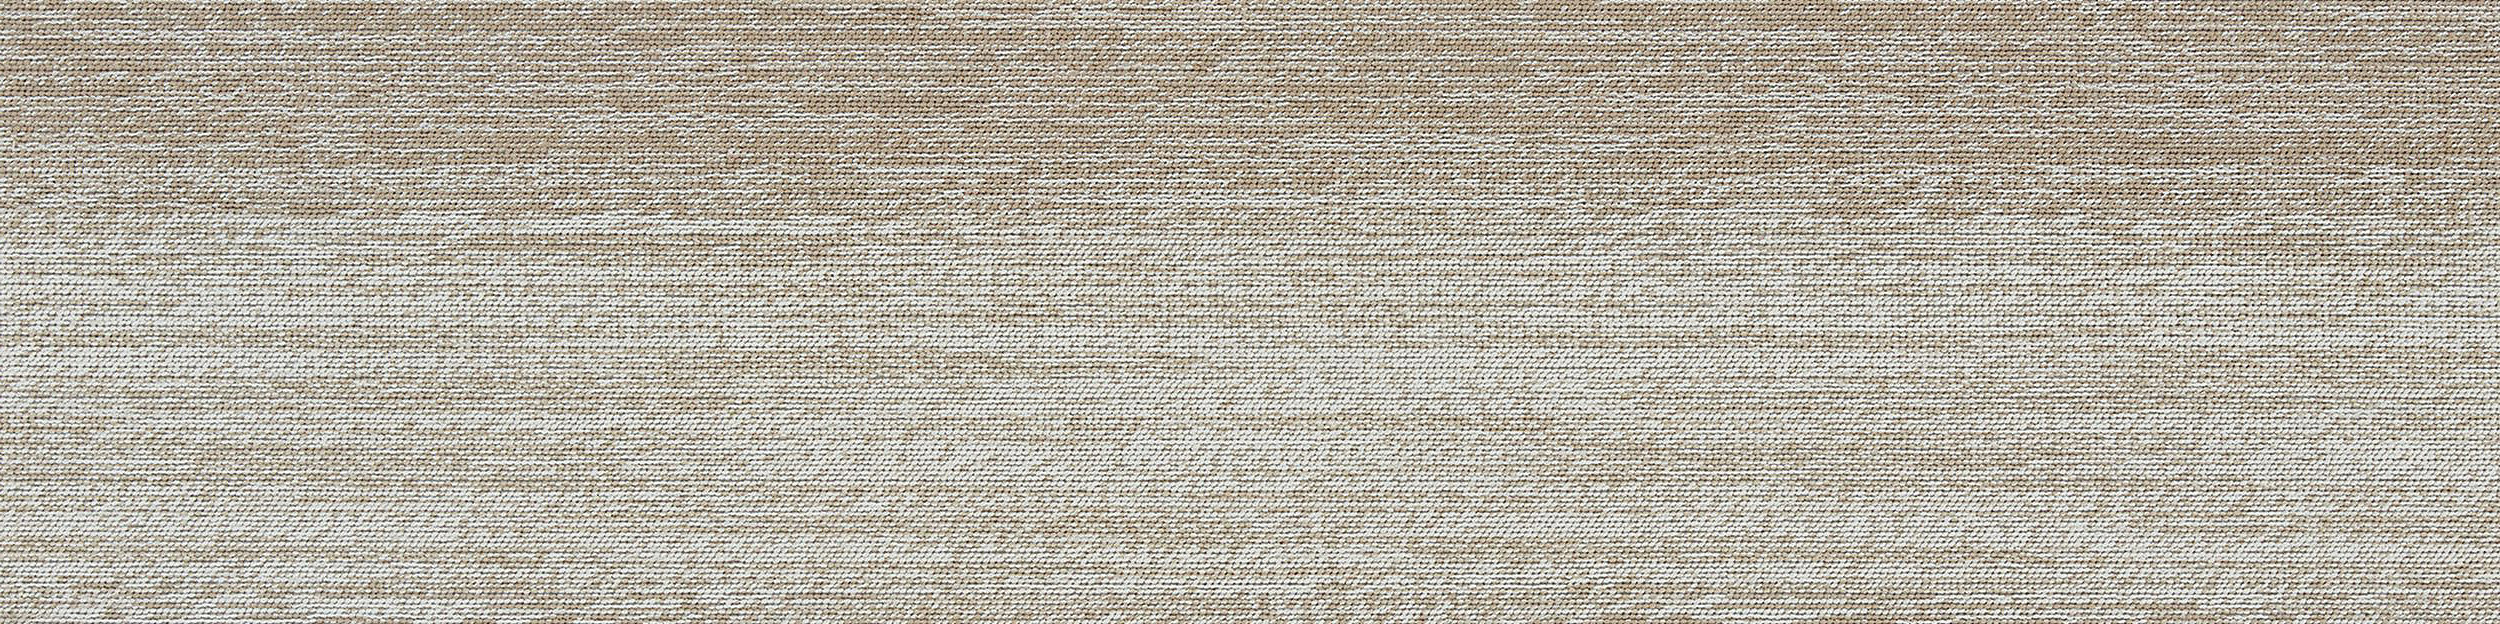 Touch of Timber Carpet Tile in Oak afbeeldingnummer 7